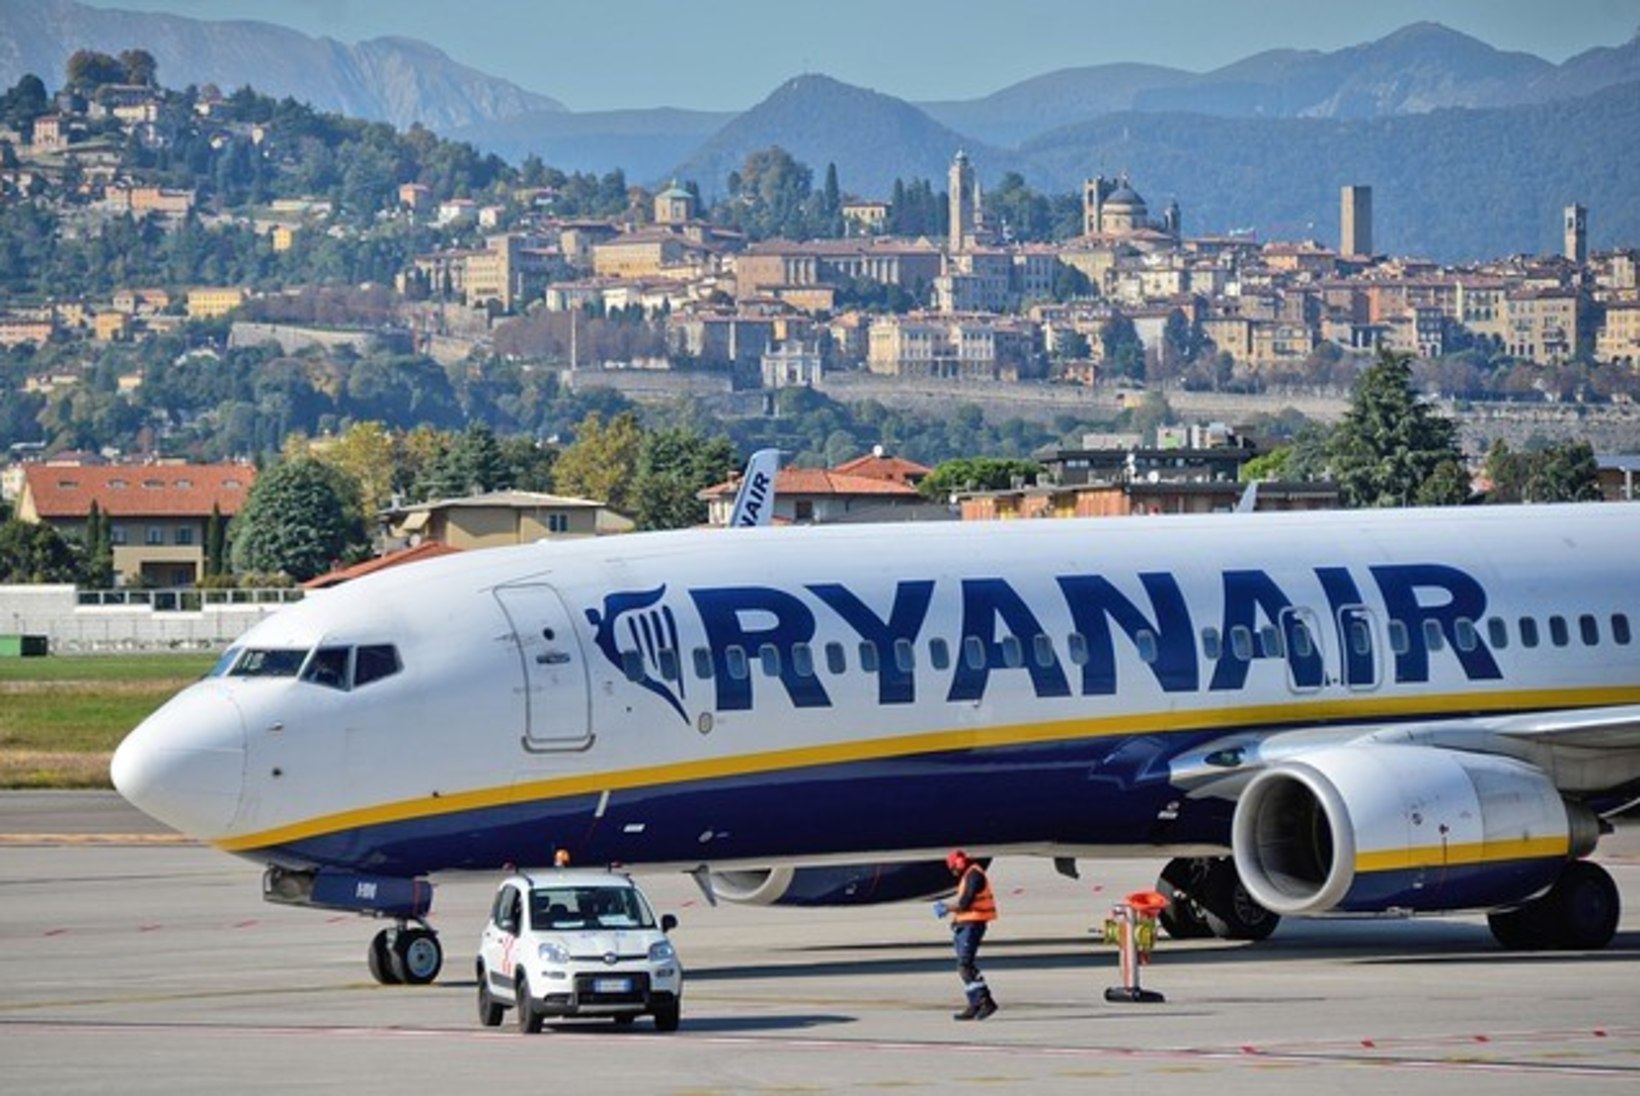 Turistid: Ryanair on kõige halvem lennufirma!